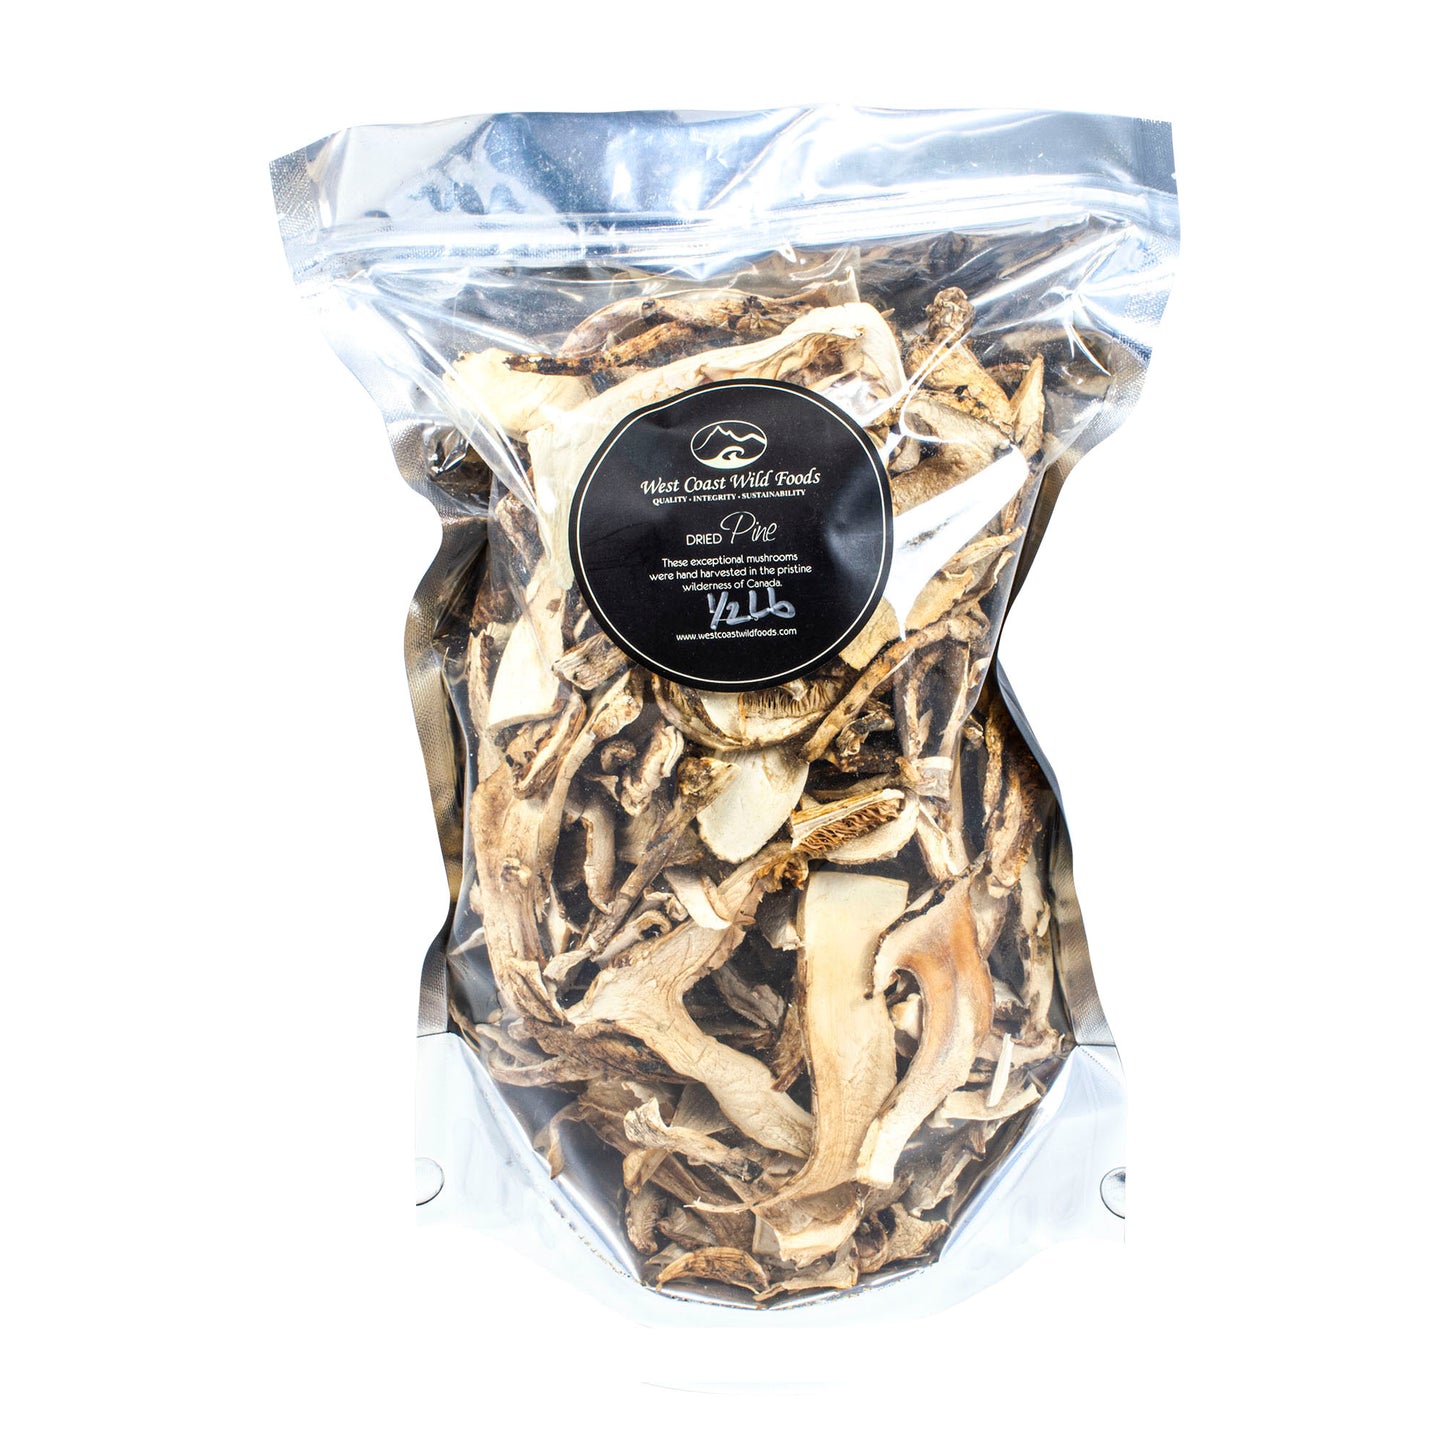 Dried Pine Mushrooms - 0.5lb